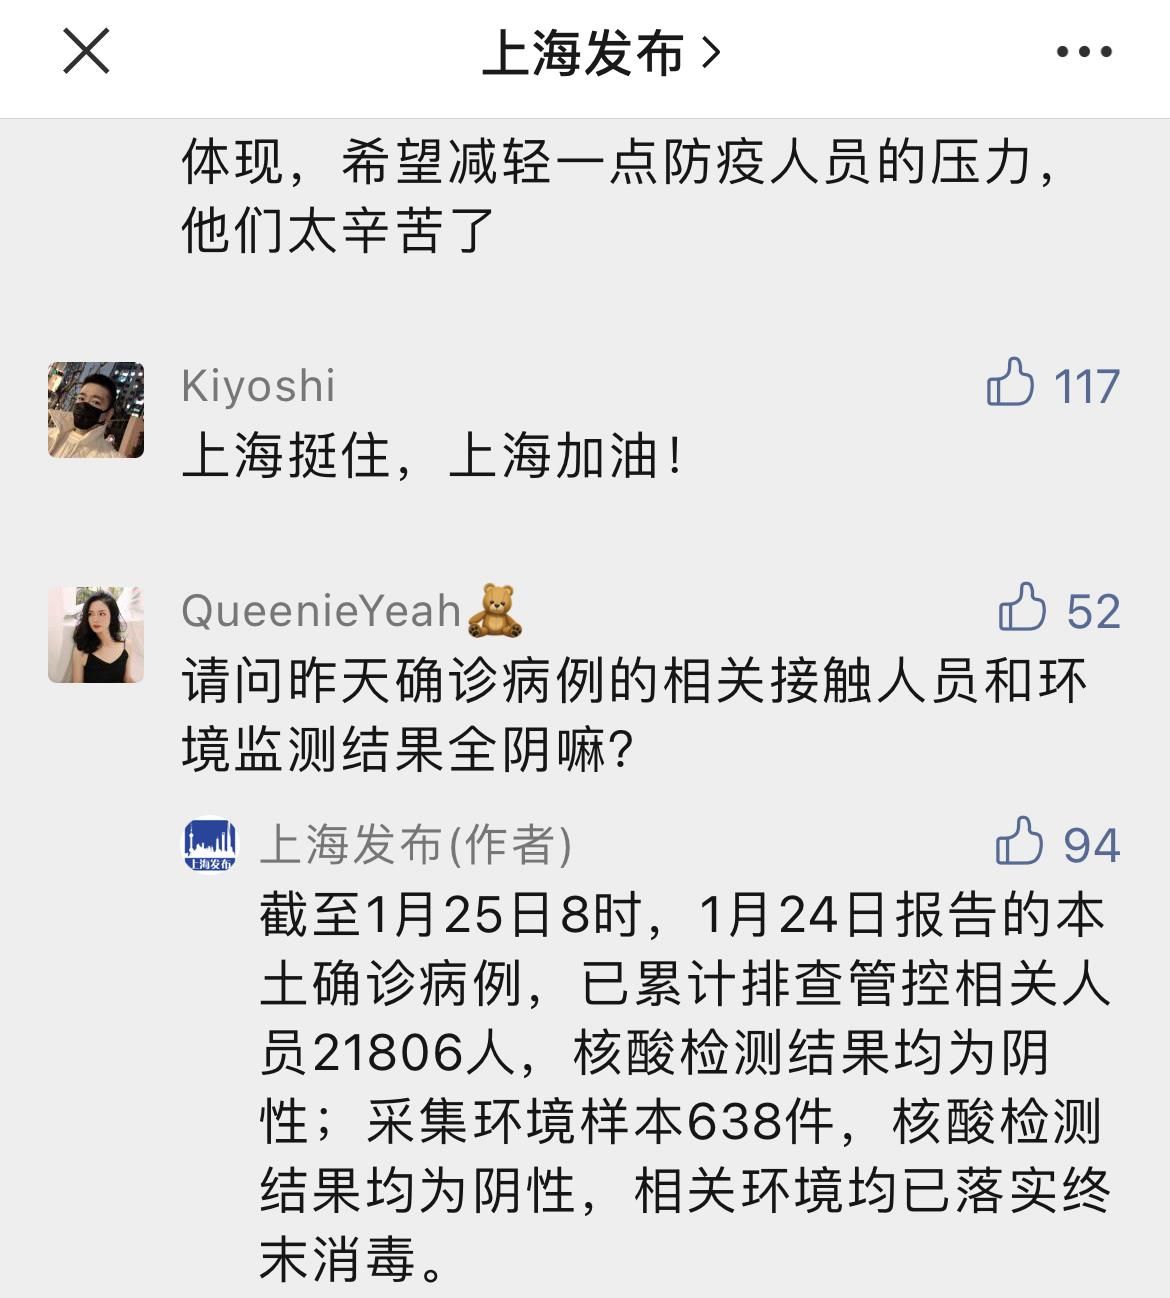 病例|昨日新增1例本土确诊病例 上海就网友关注的疫情防控相关问题进行回应